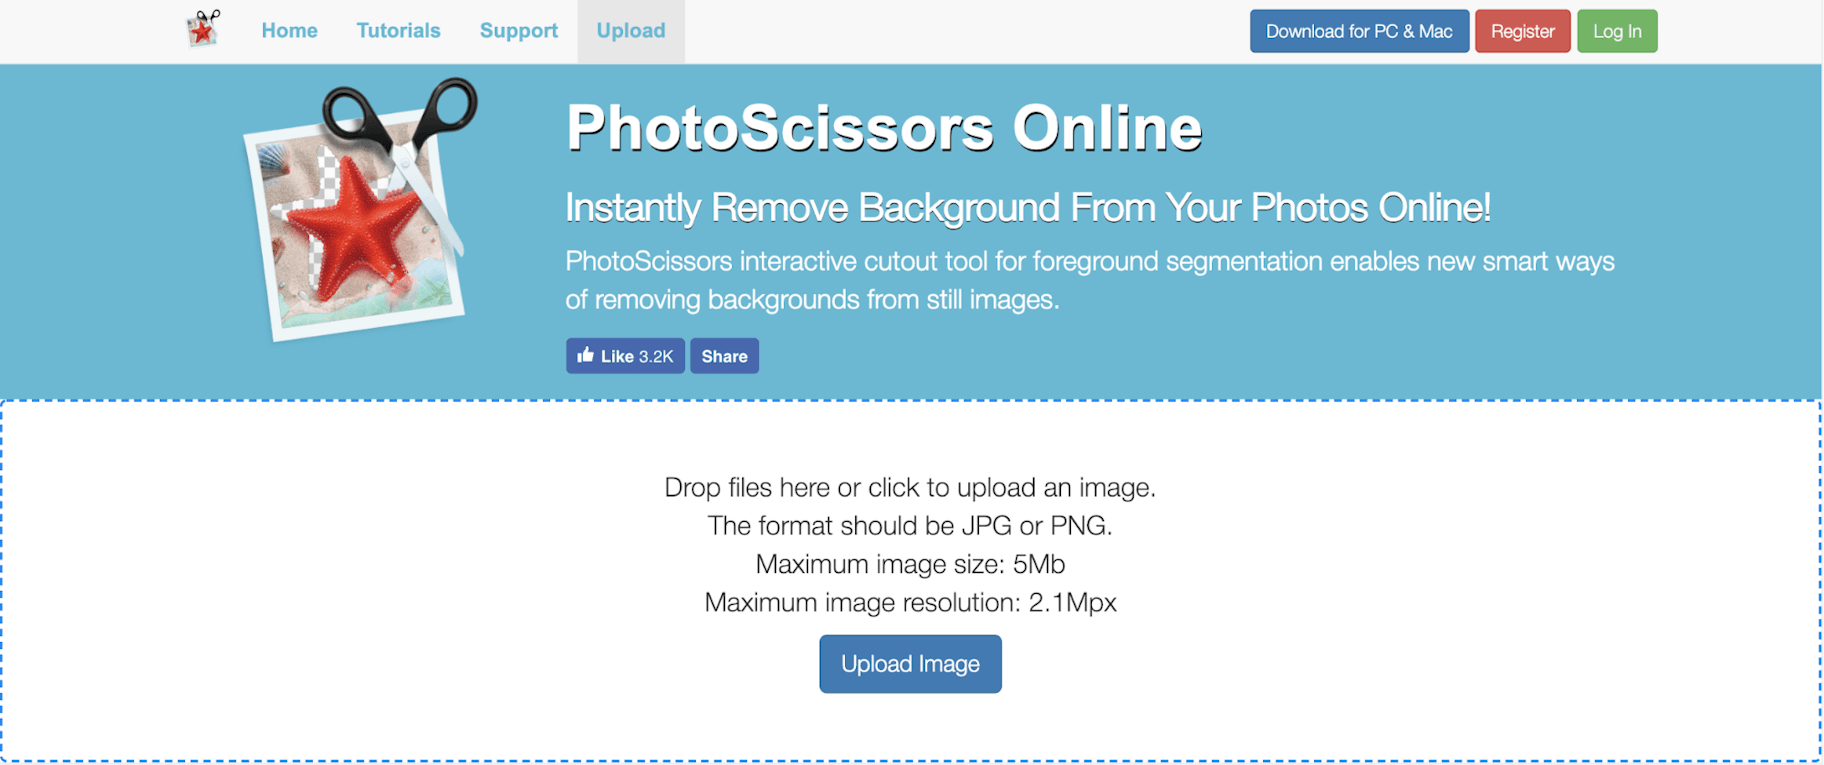 Photoscissors Online